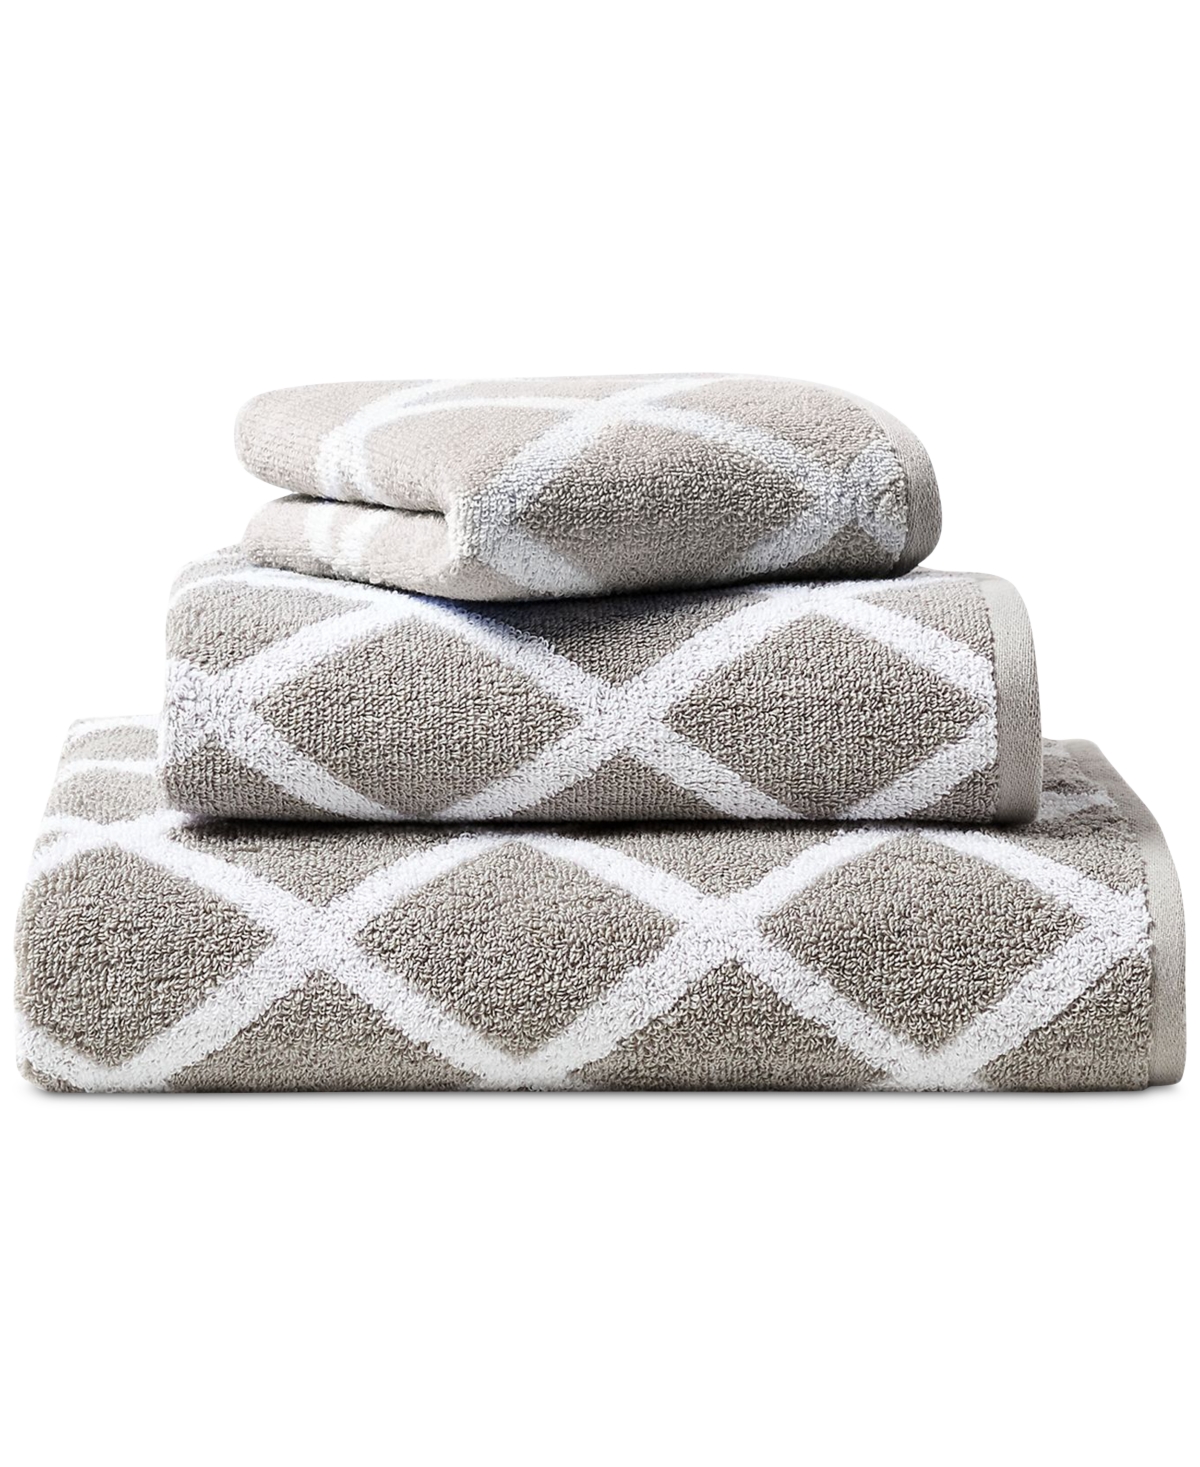 Lauren Ralph Lauren Sanders Diamond Cotton Wash Towel Bedding In Pewter Grey